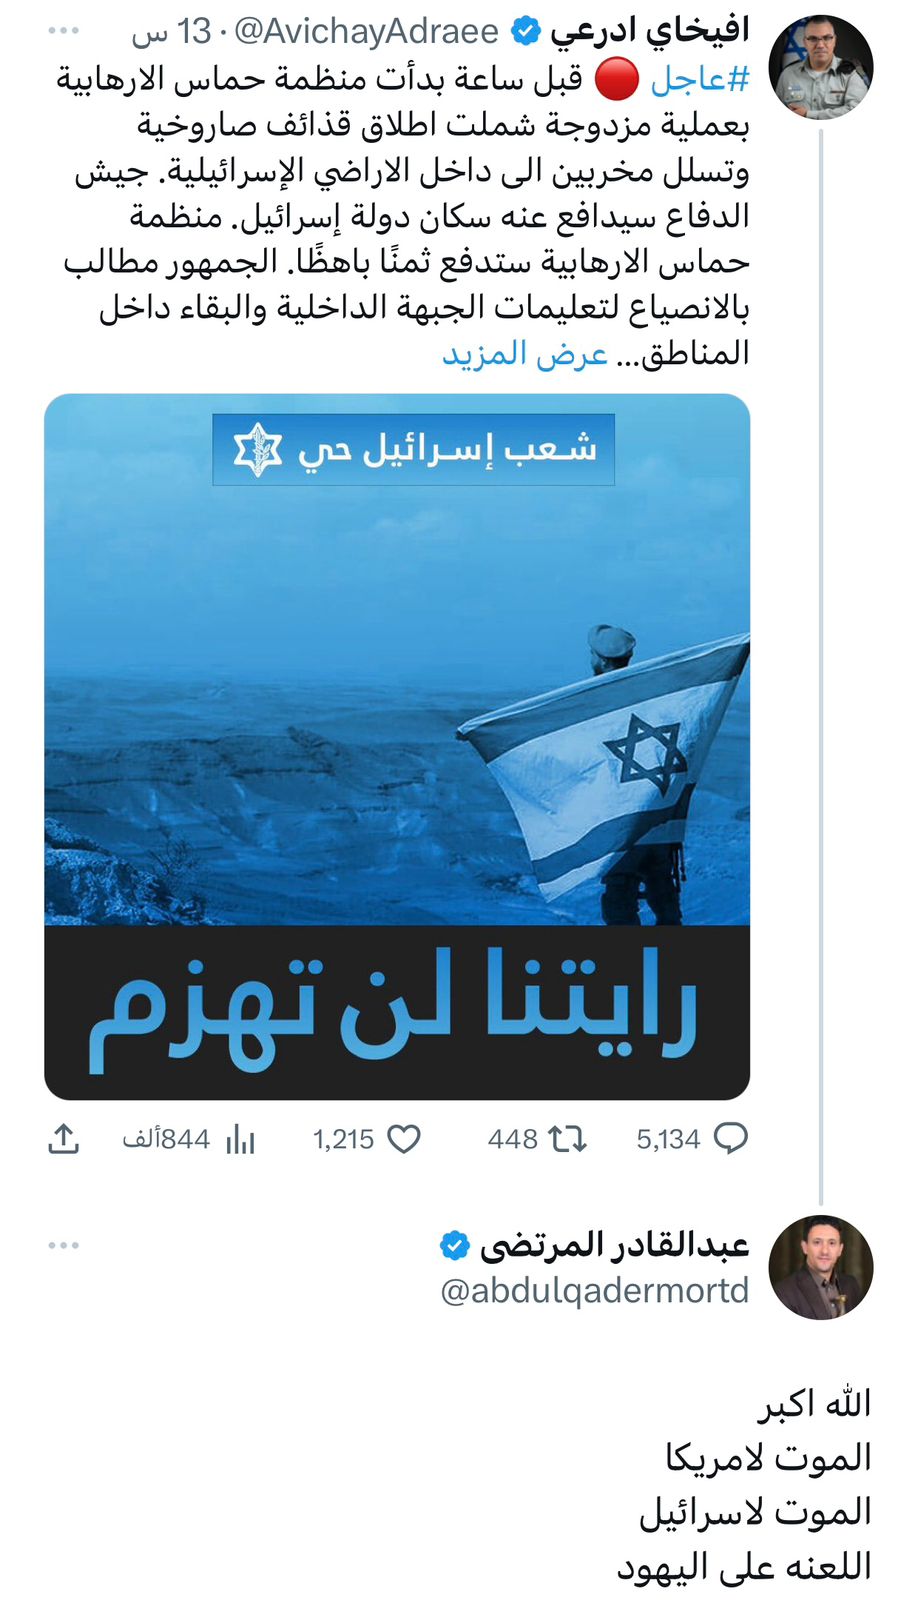 بعد دعوة حماس للحوثيين للإلتحام بالمعركة..قيادات الحوثي ترفع "شعار الصرخة" في صفحات المتحدث باسم الجيش الصهيوني بتويتر